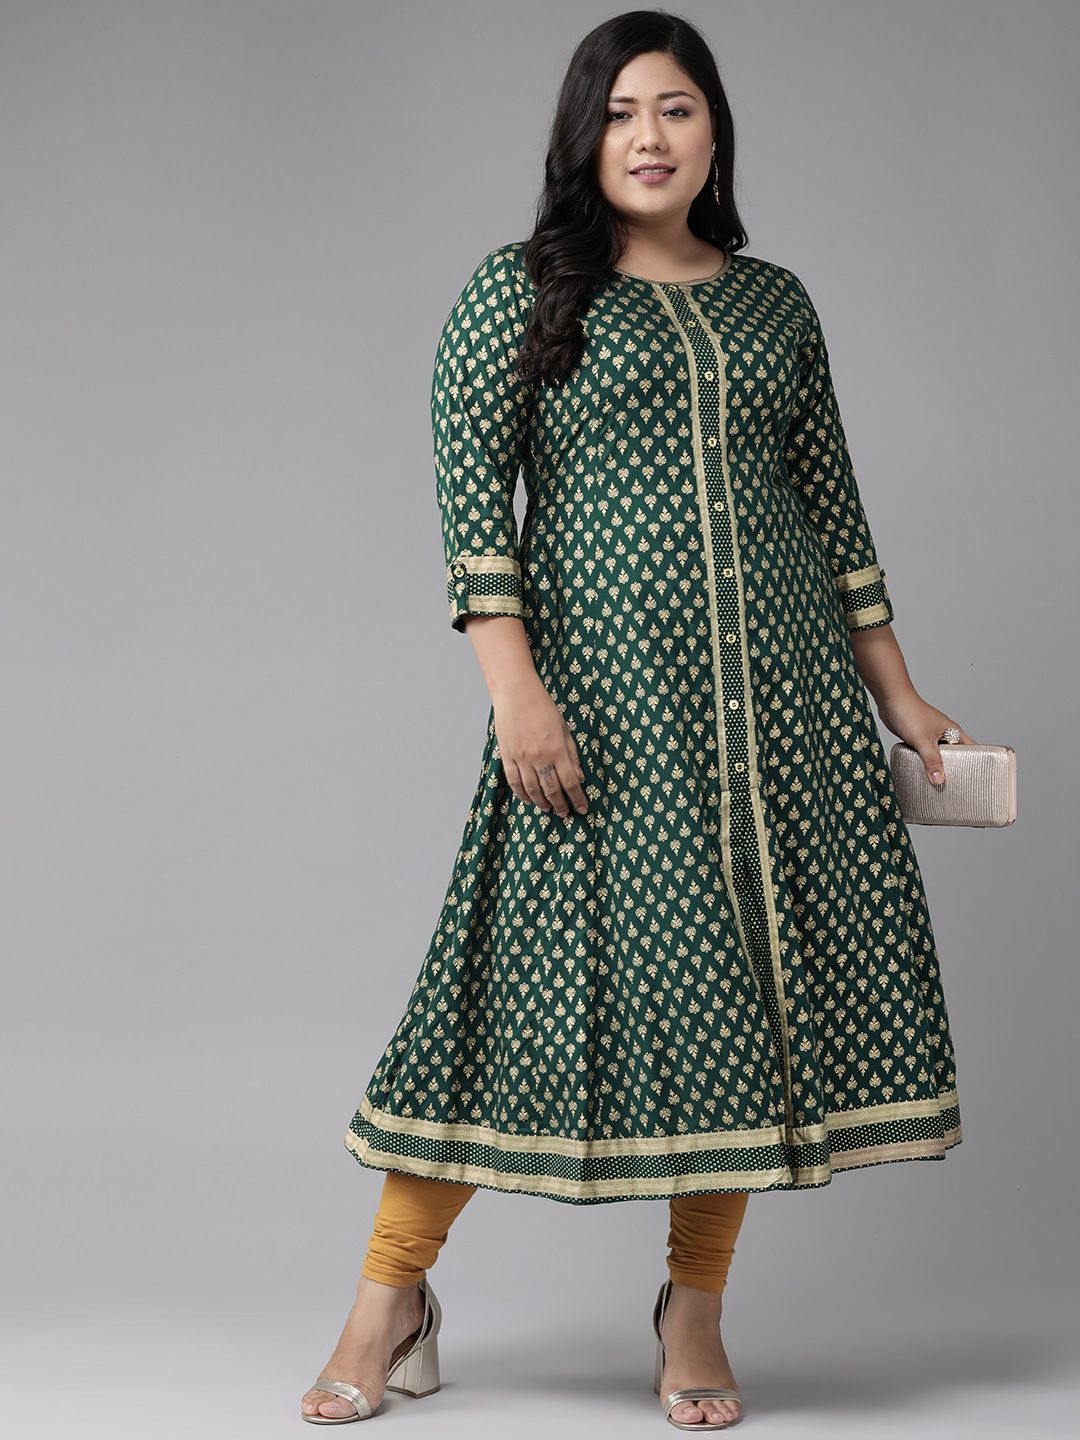 YASH GALLERY Women Plus Size Green & Golden Printed Anarkali Kurta Price in India